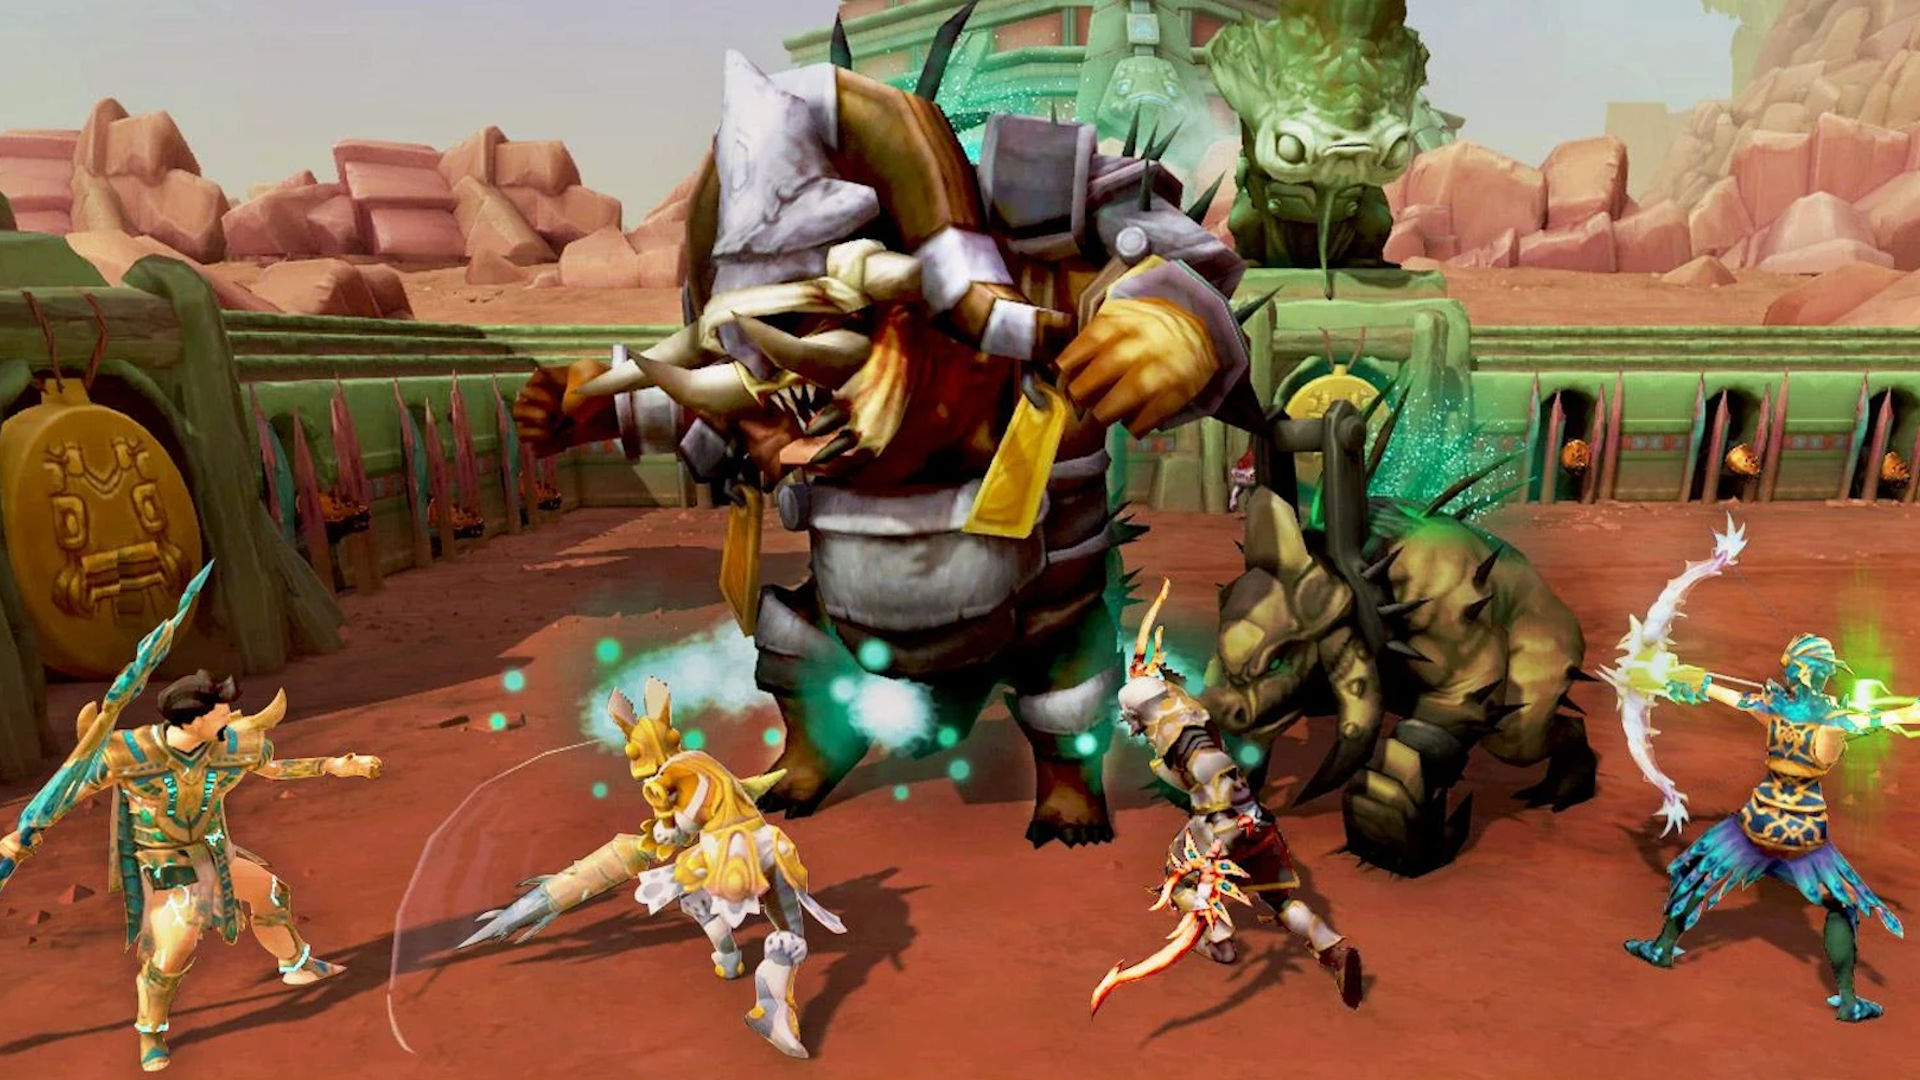 En iyi mobil MMORPG'ler: Runescape Mobile. Resim, dev bir canavarla savaşan dört savaşçının bir kısmını gösterir